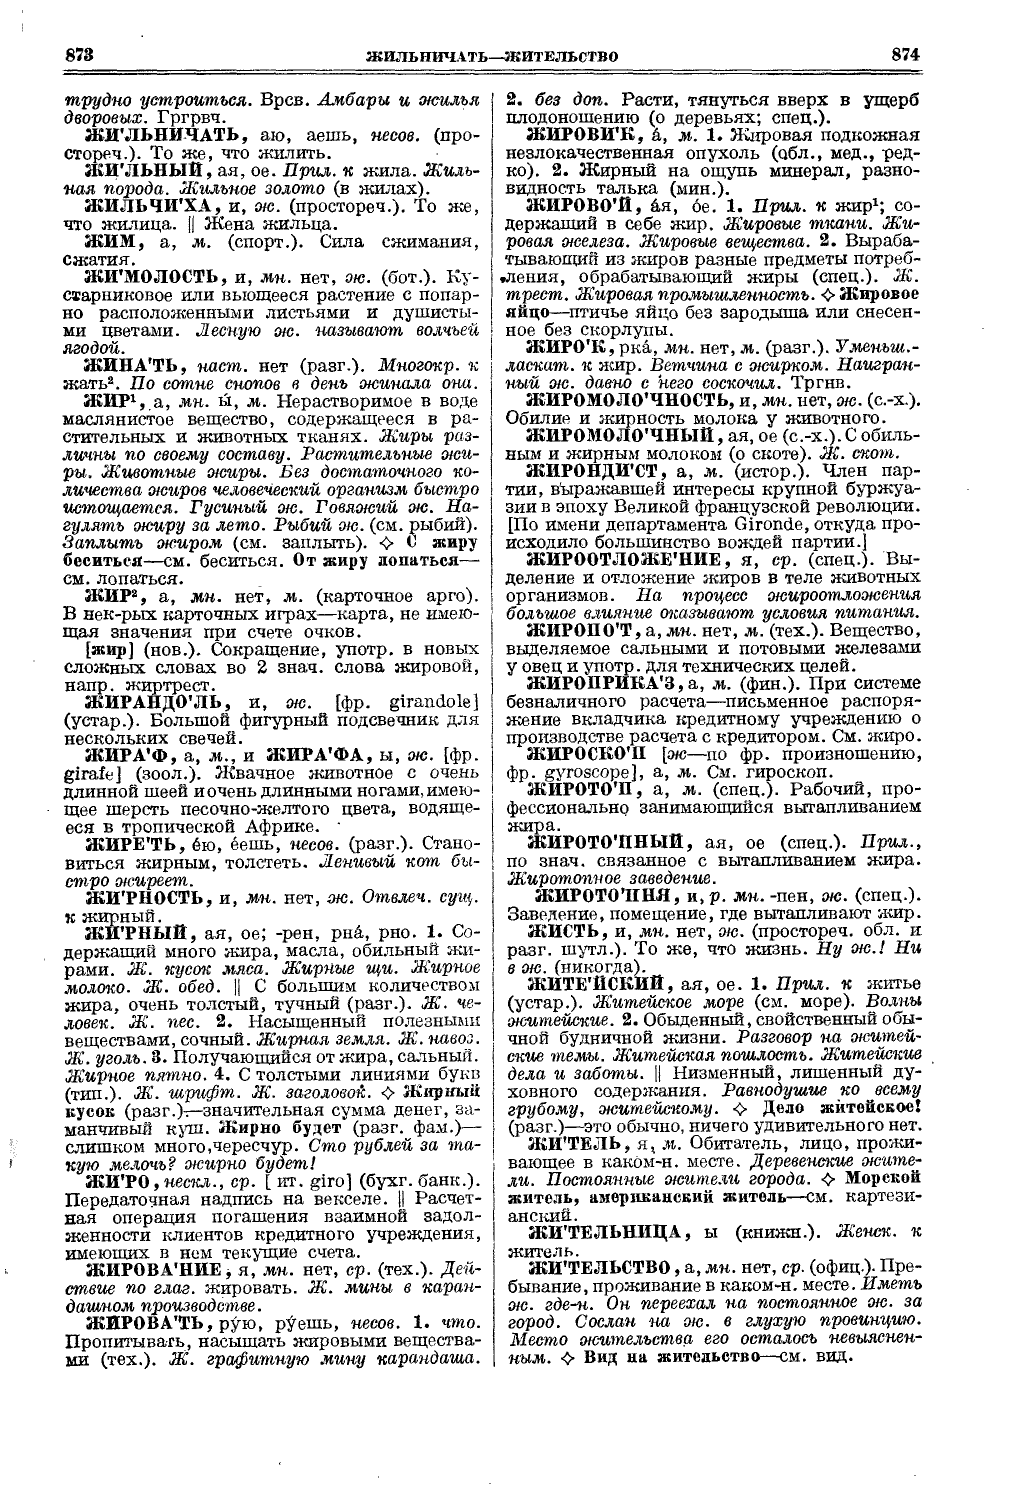 Фотокопия pdf / скан страницы 475 толкового словаря Ушакова (том 1)